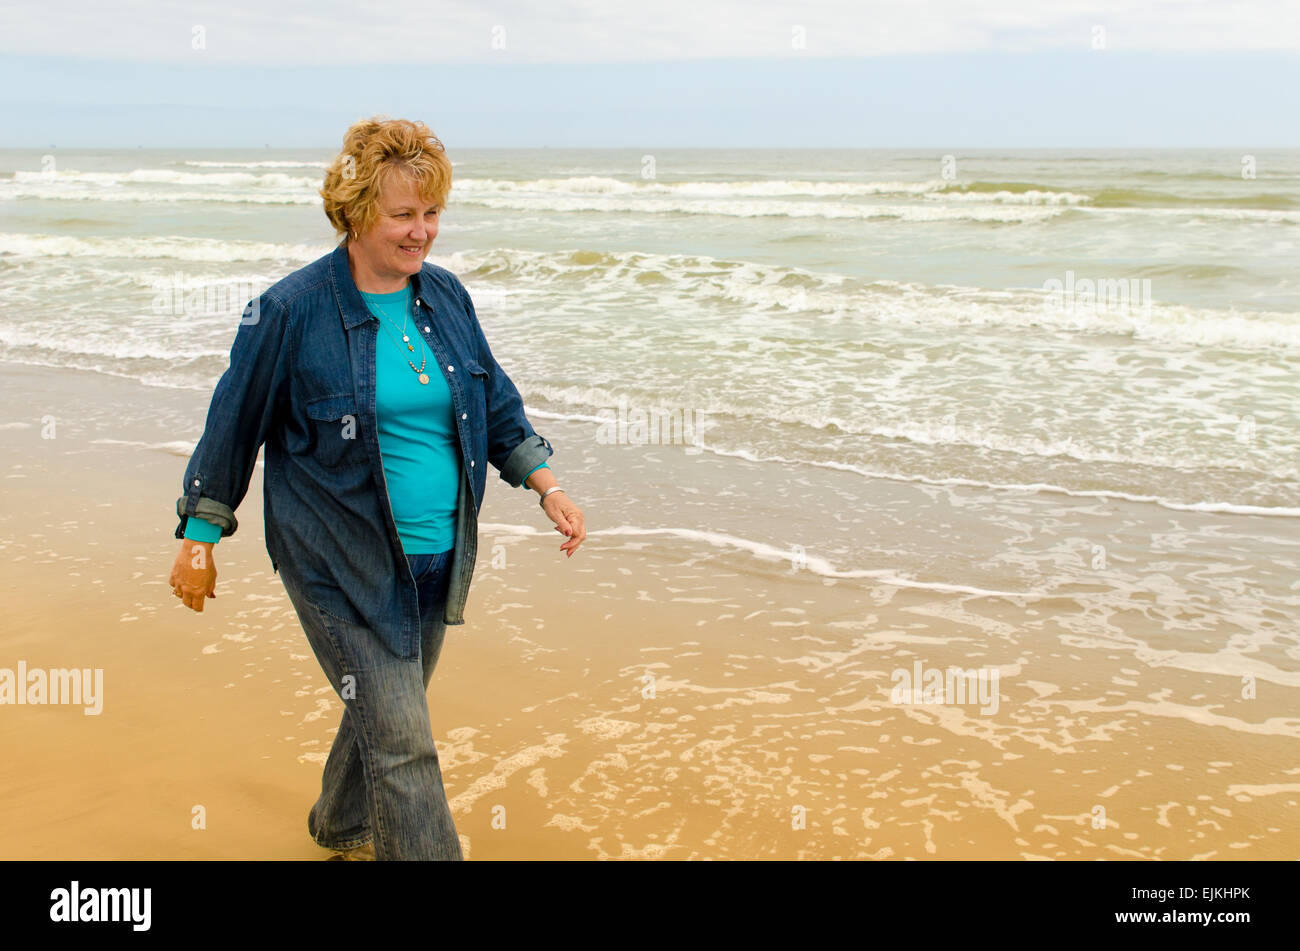 Senior woman walking on the beach Stock Photo